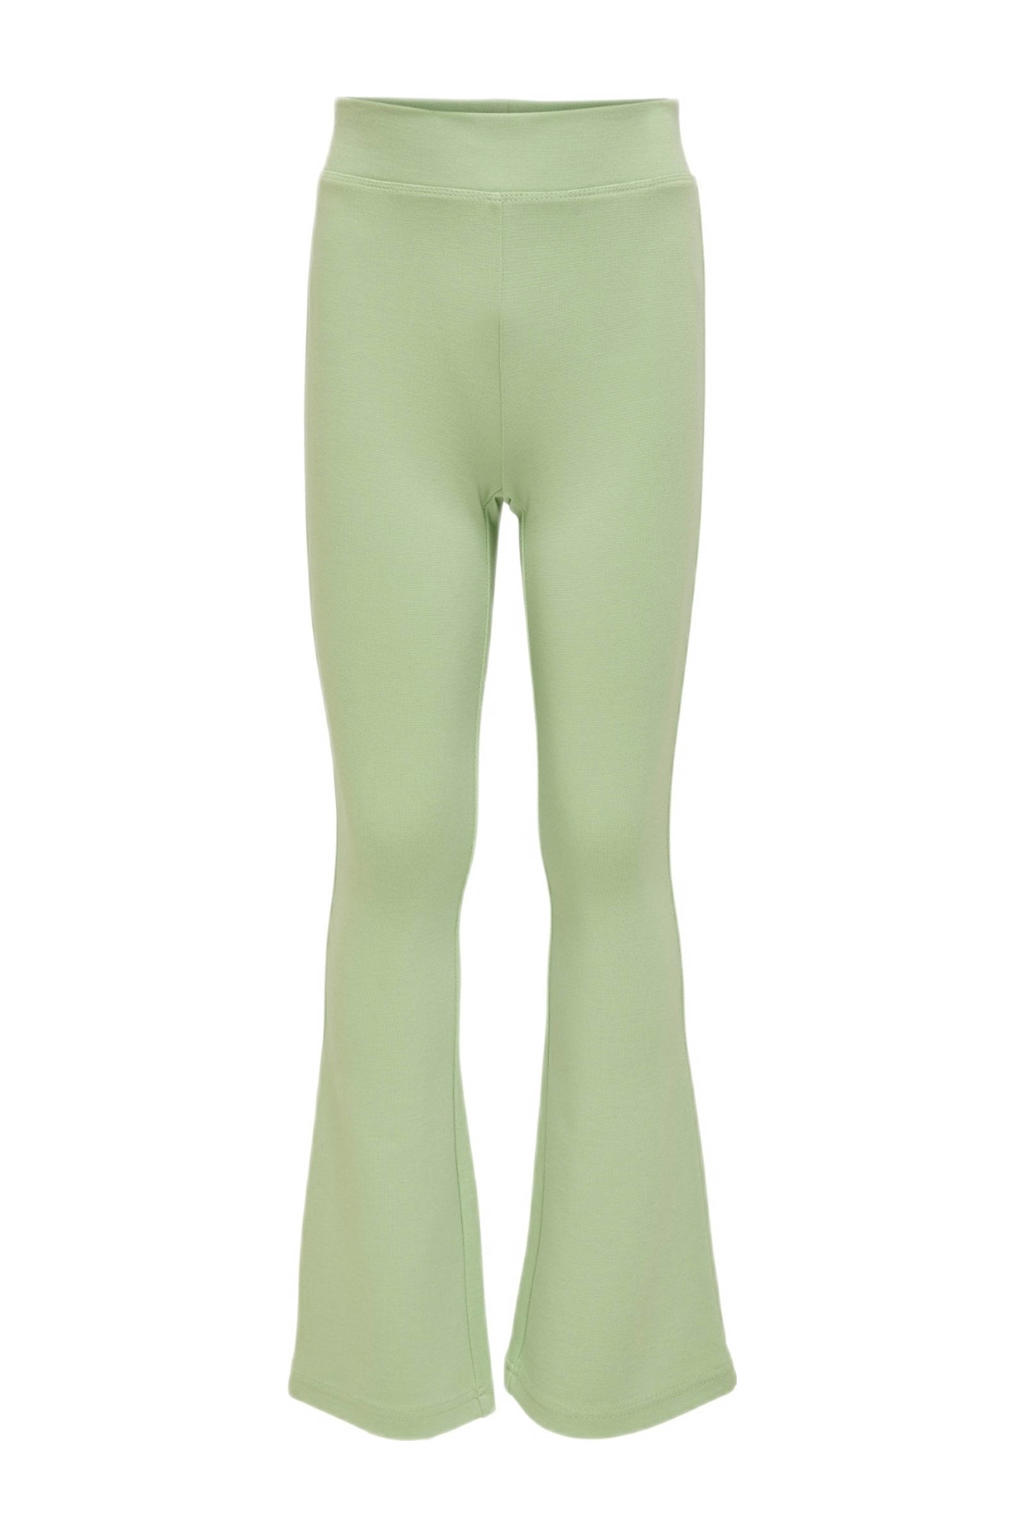 Groene meisjes KIDS ONLY flared broek van viscose met regular waist en elastische tailleband